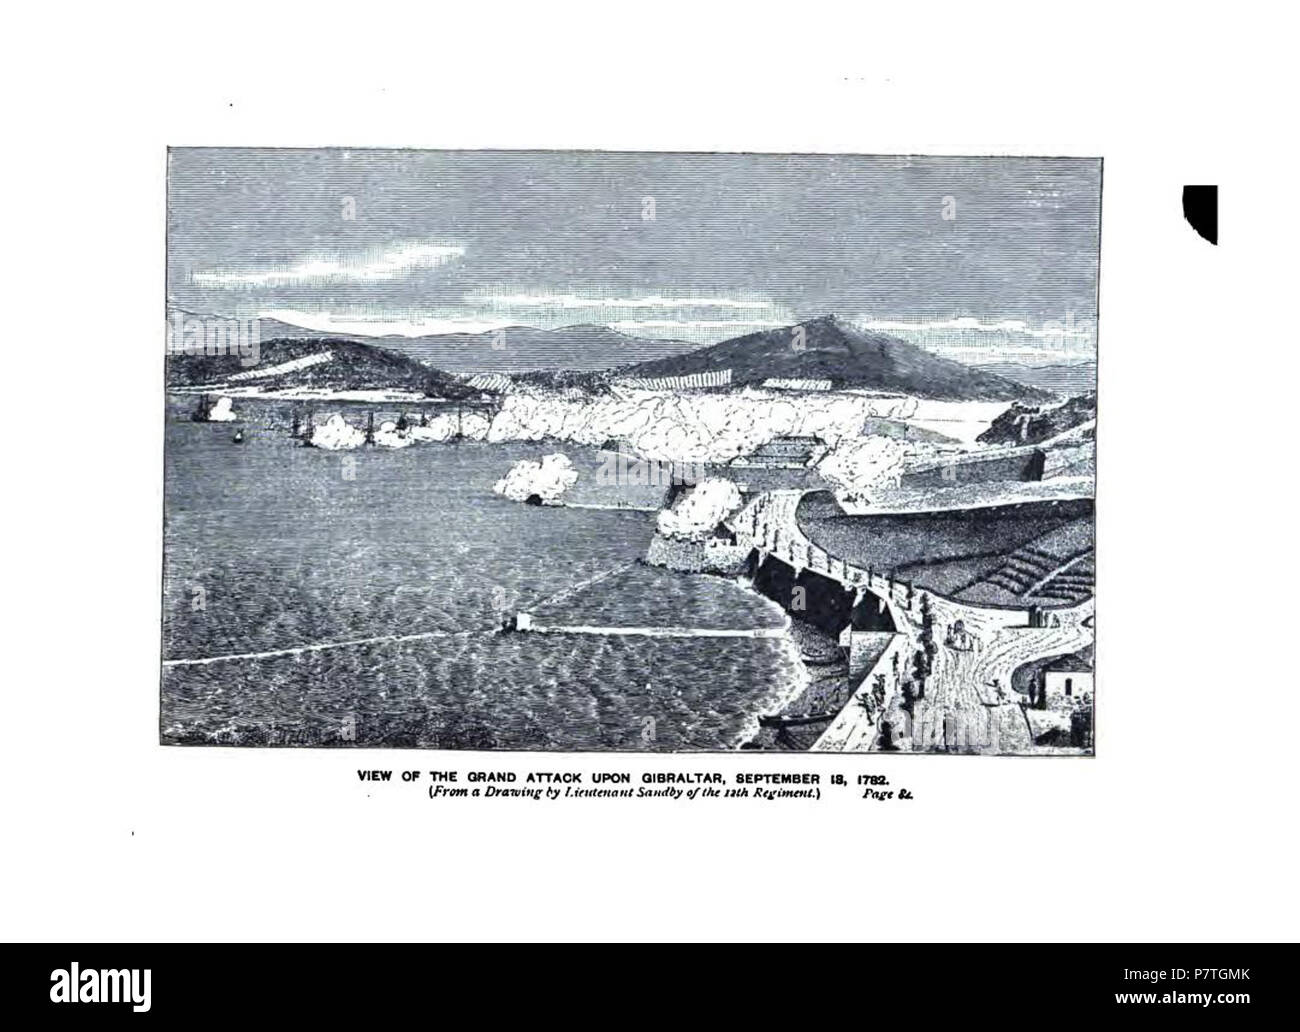 Englisch: Grand Angriff 18 Sept 1782-Gravuren von ieges von Gibraltar' 1879. 26 November 2012, 16:07:42 3 1782 Schränke Sept 18 Gibraltar Grand Angriff Stockfoto